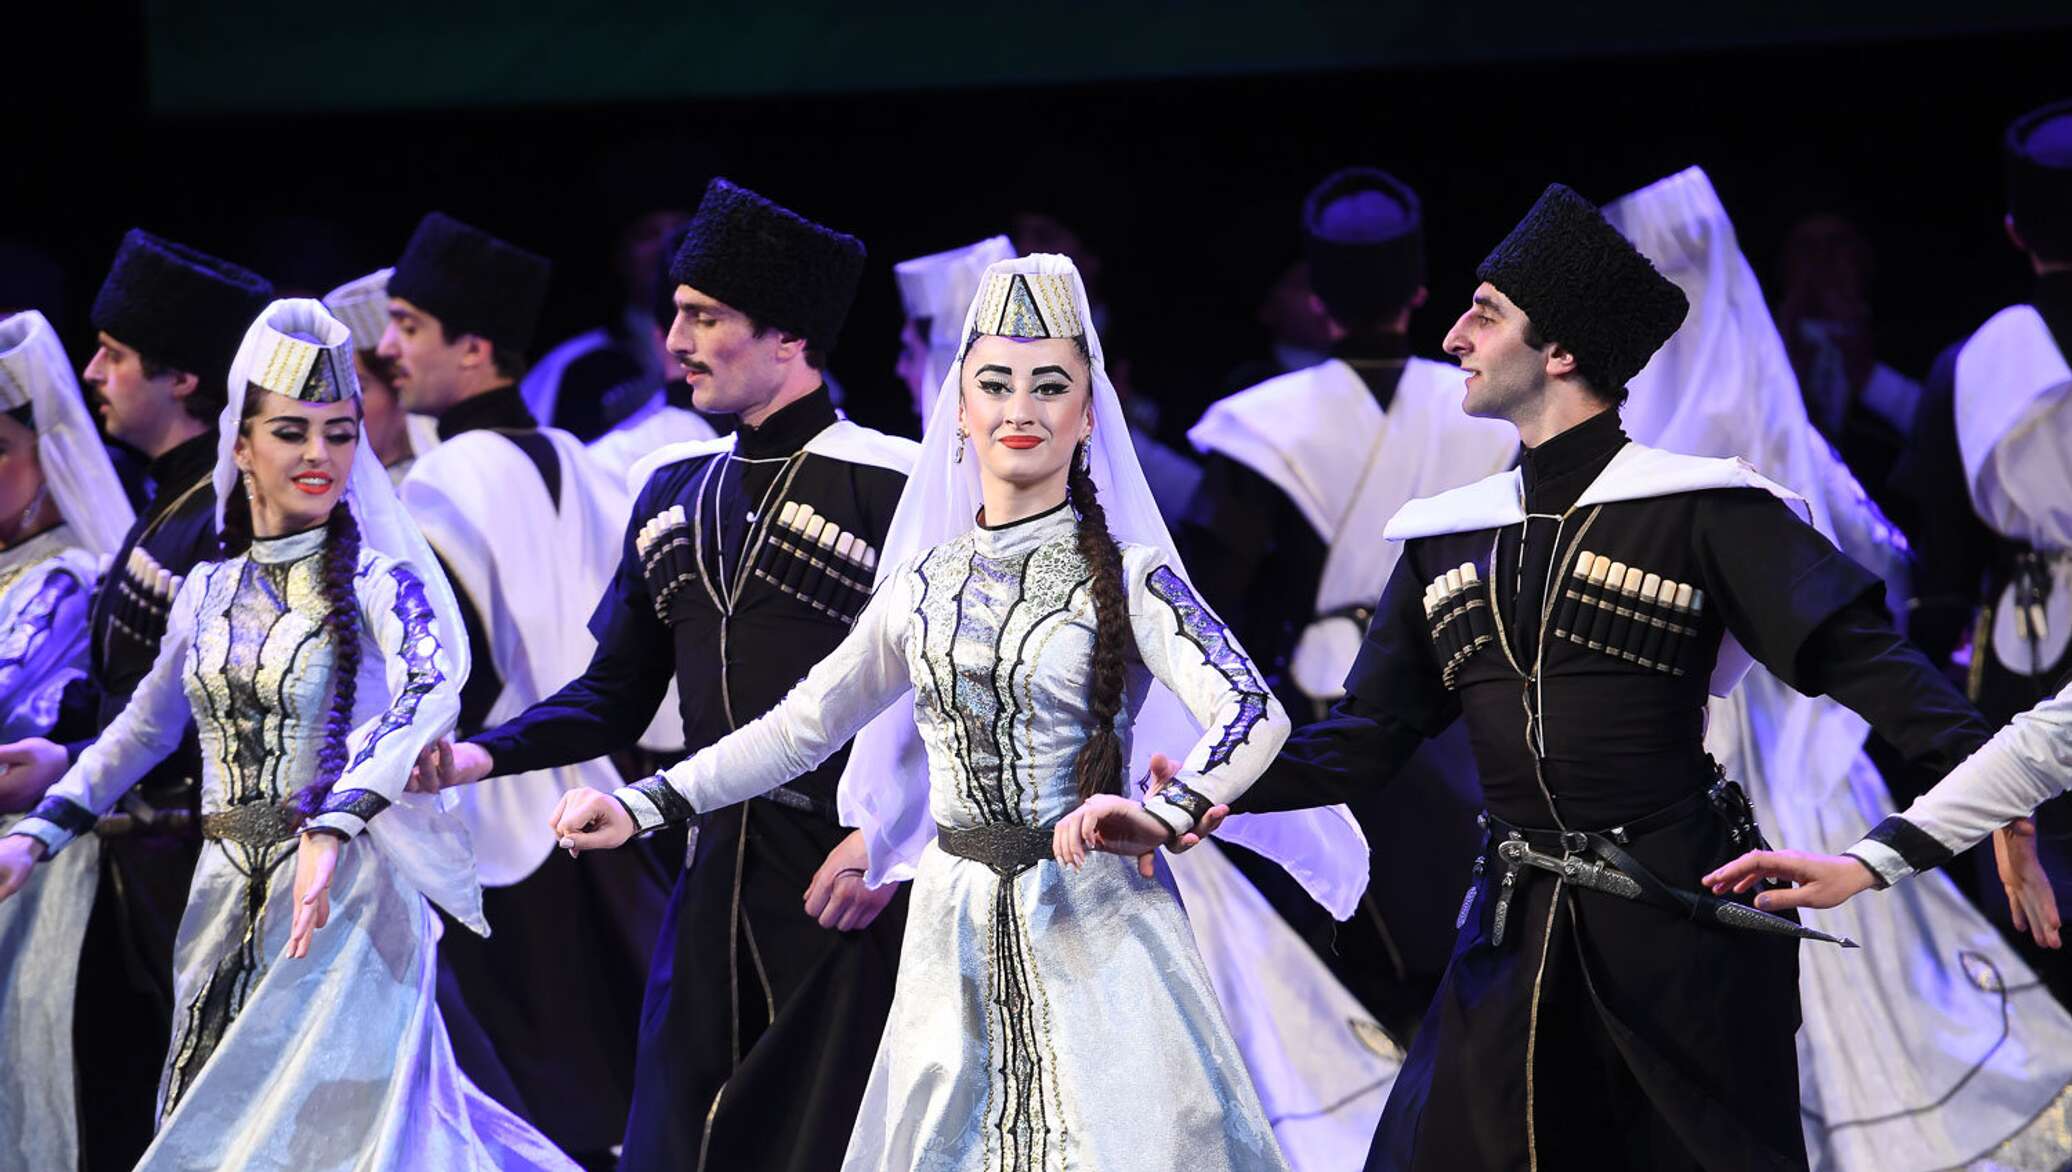 Абхазский национальный костюм женский